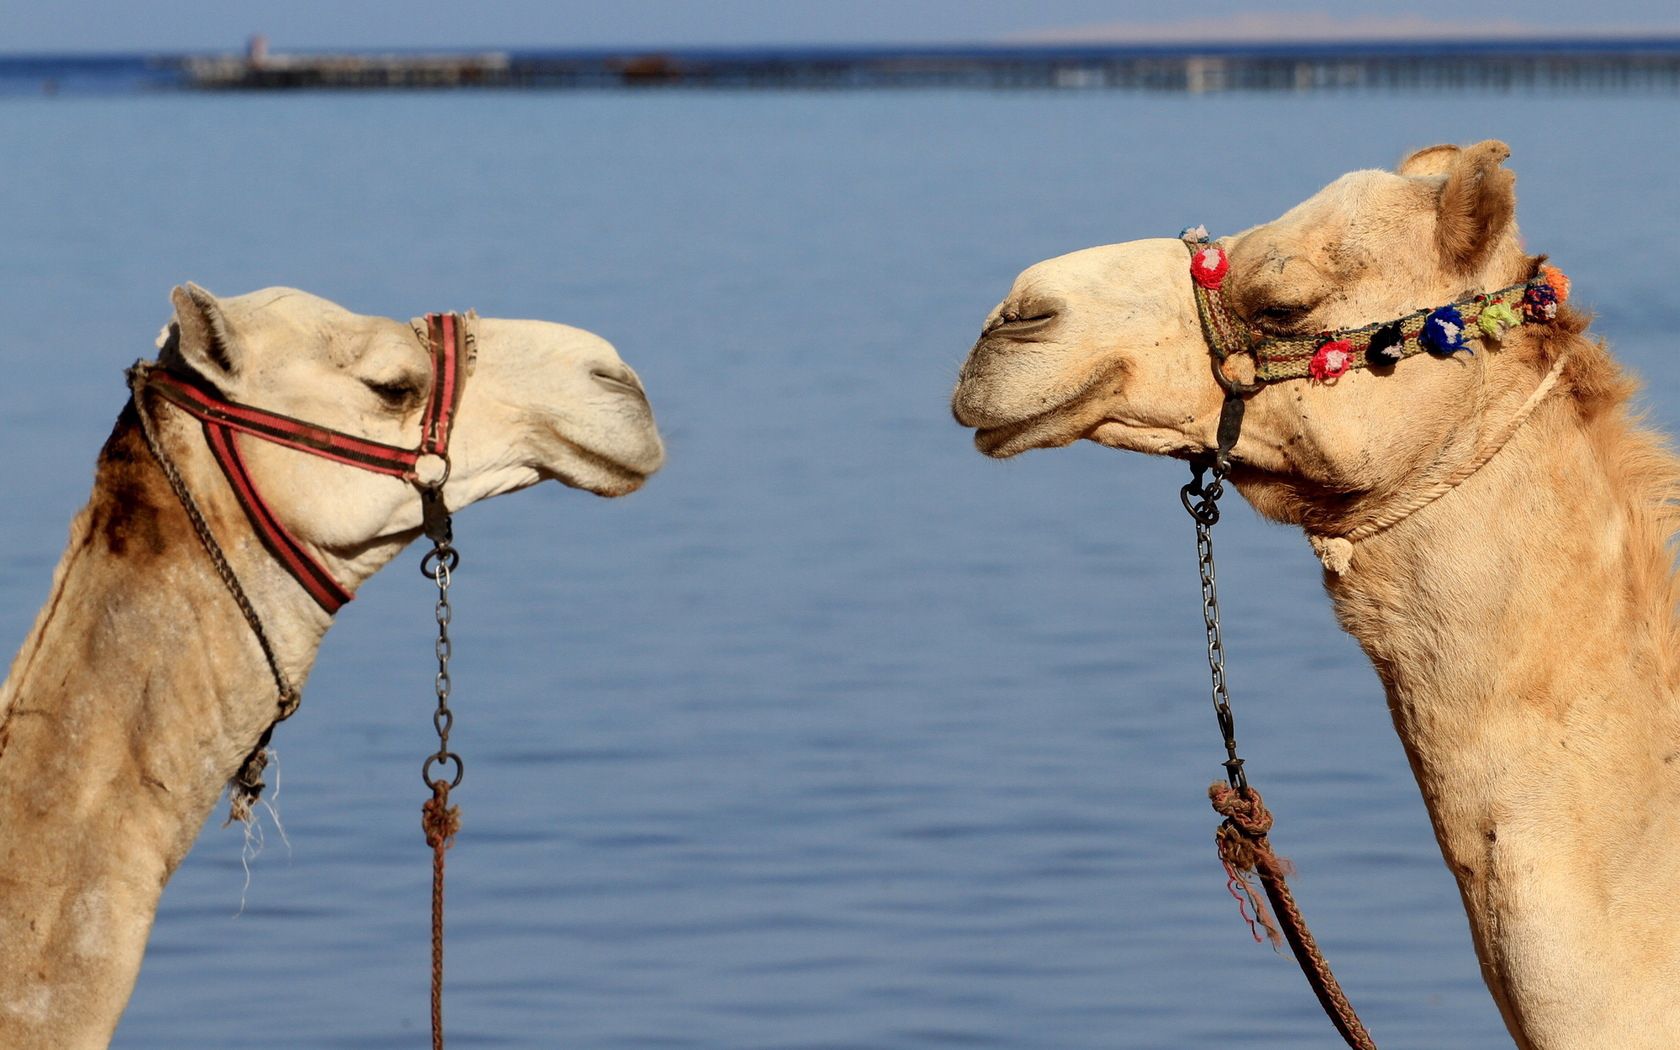 Скачать обои Верблюды на телефон бесплатно